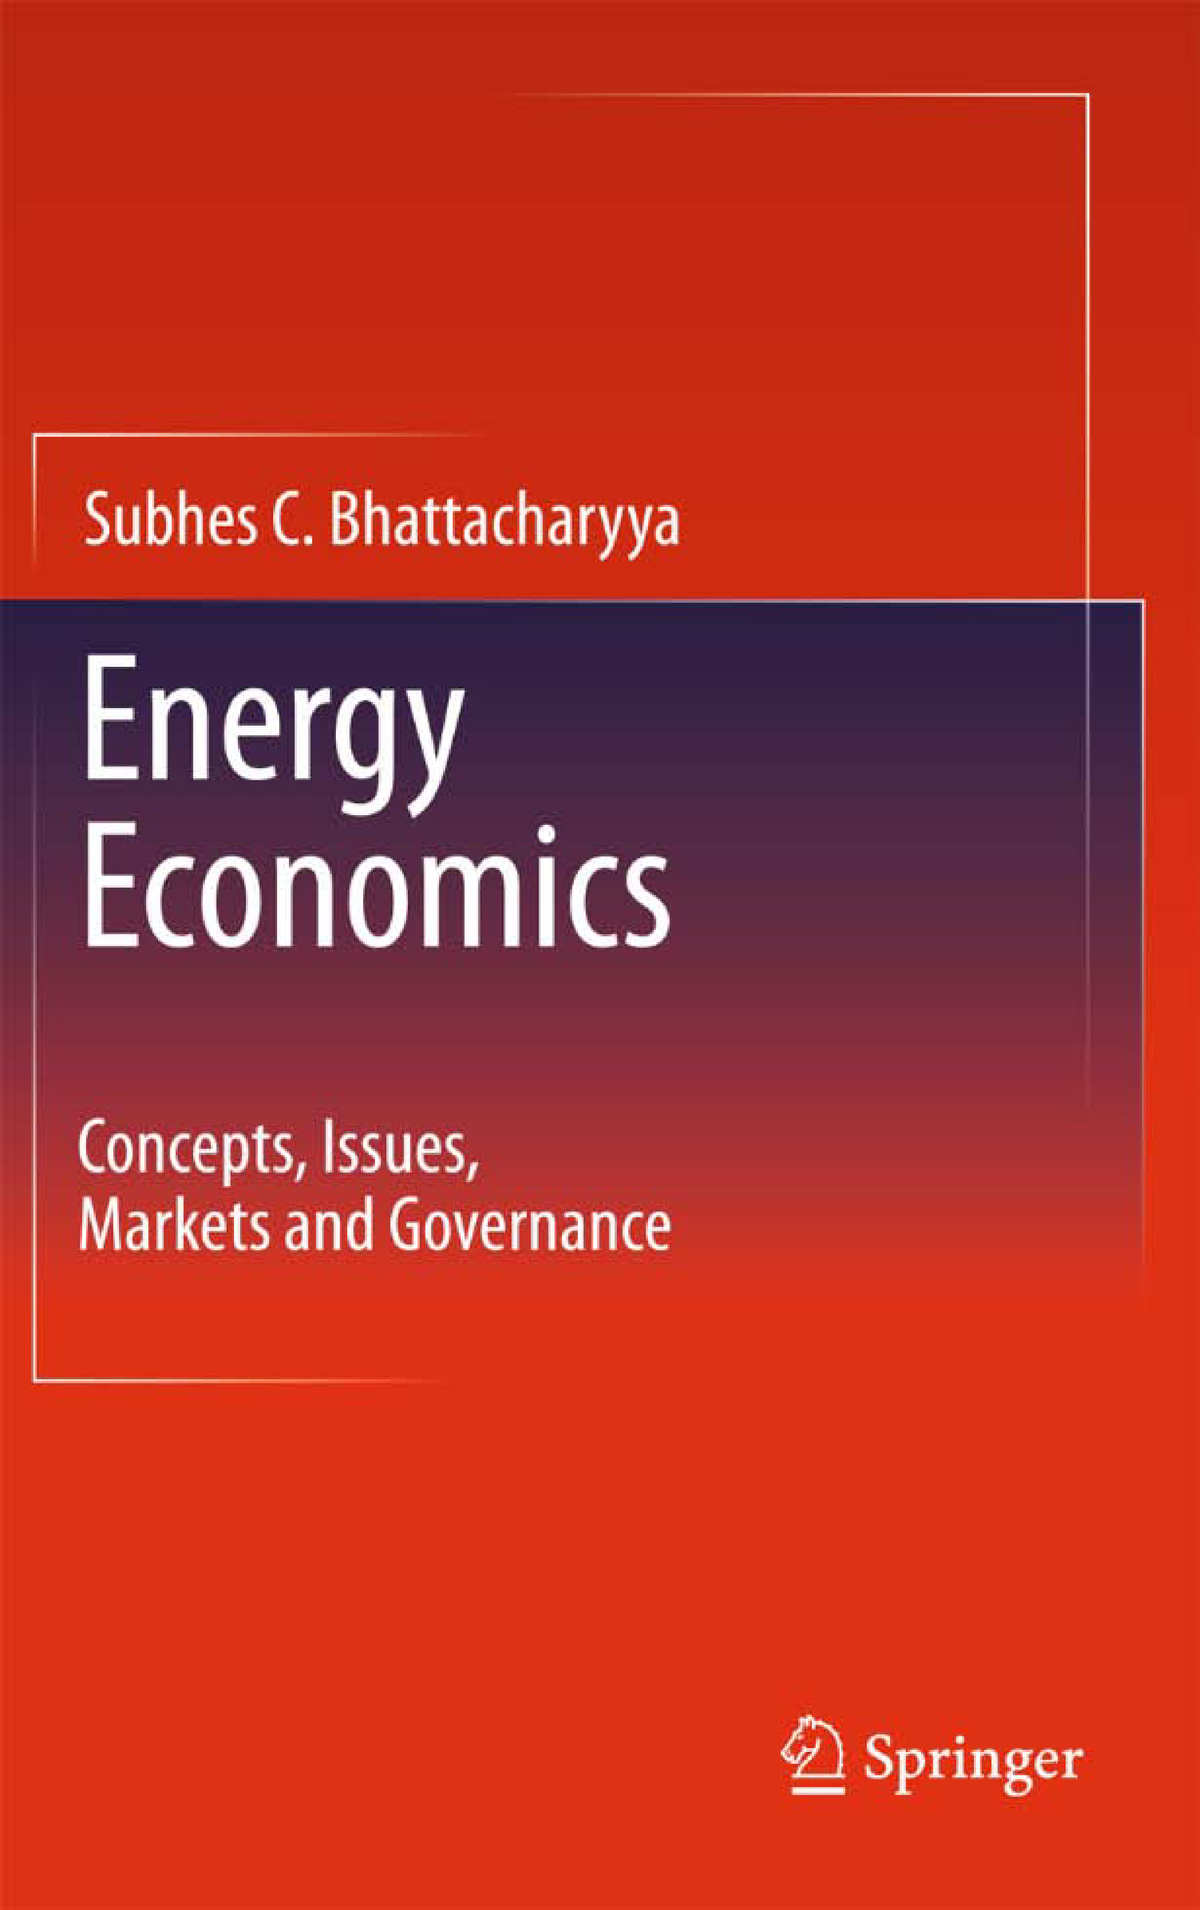 phd economics energy